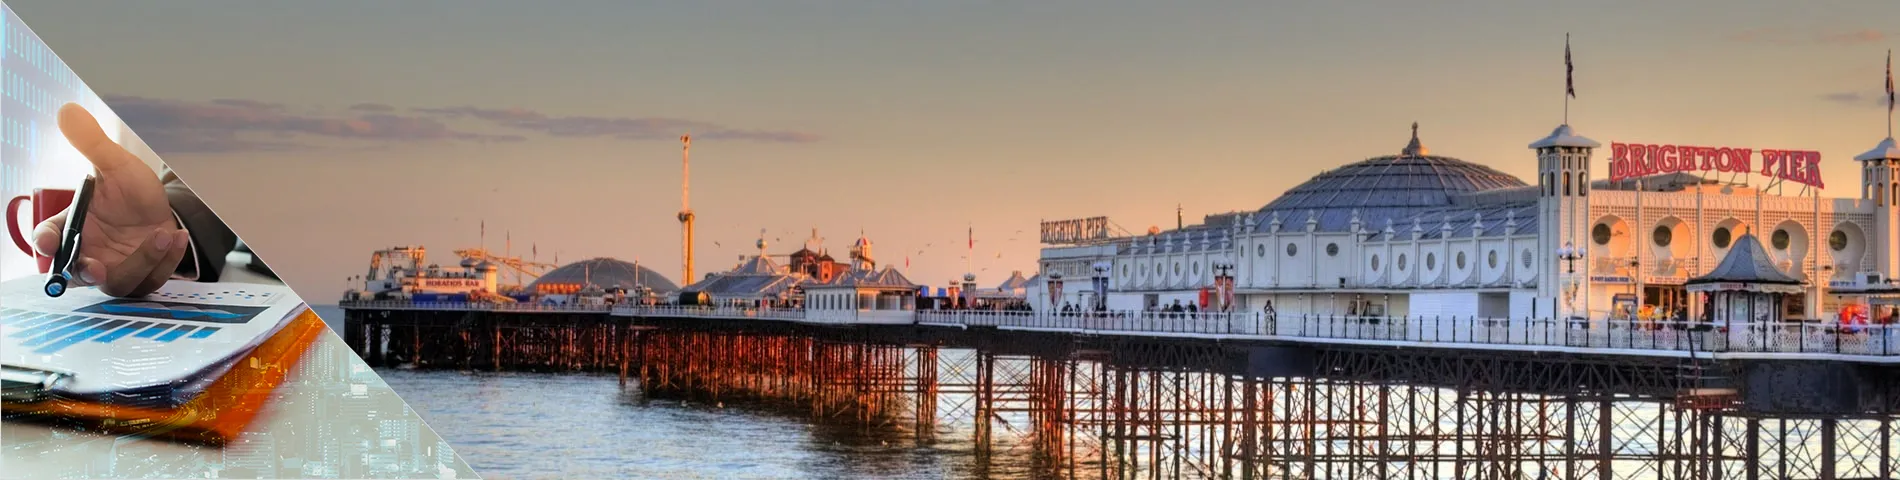 Brighton - Banken & Finanzen